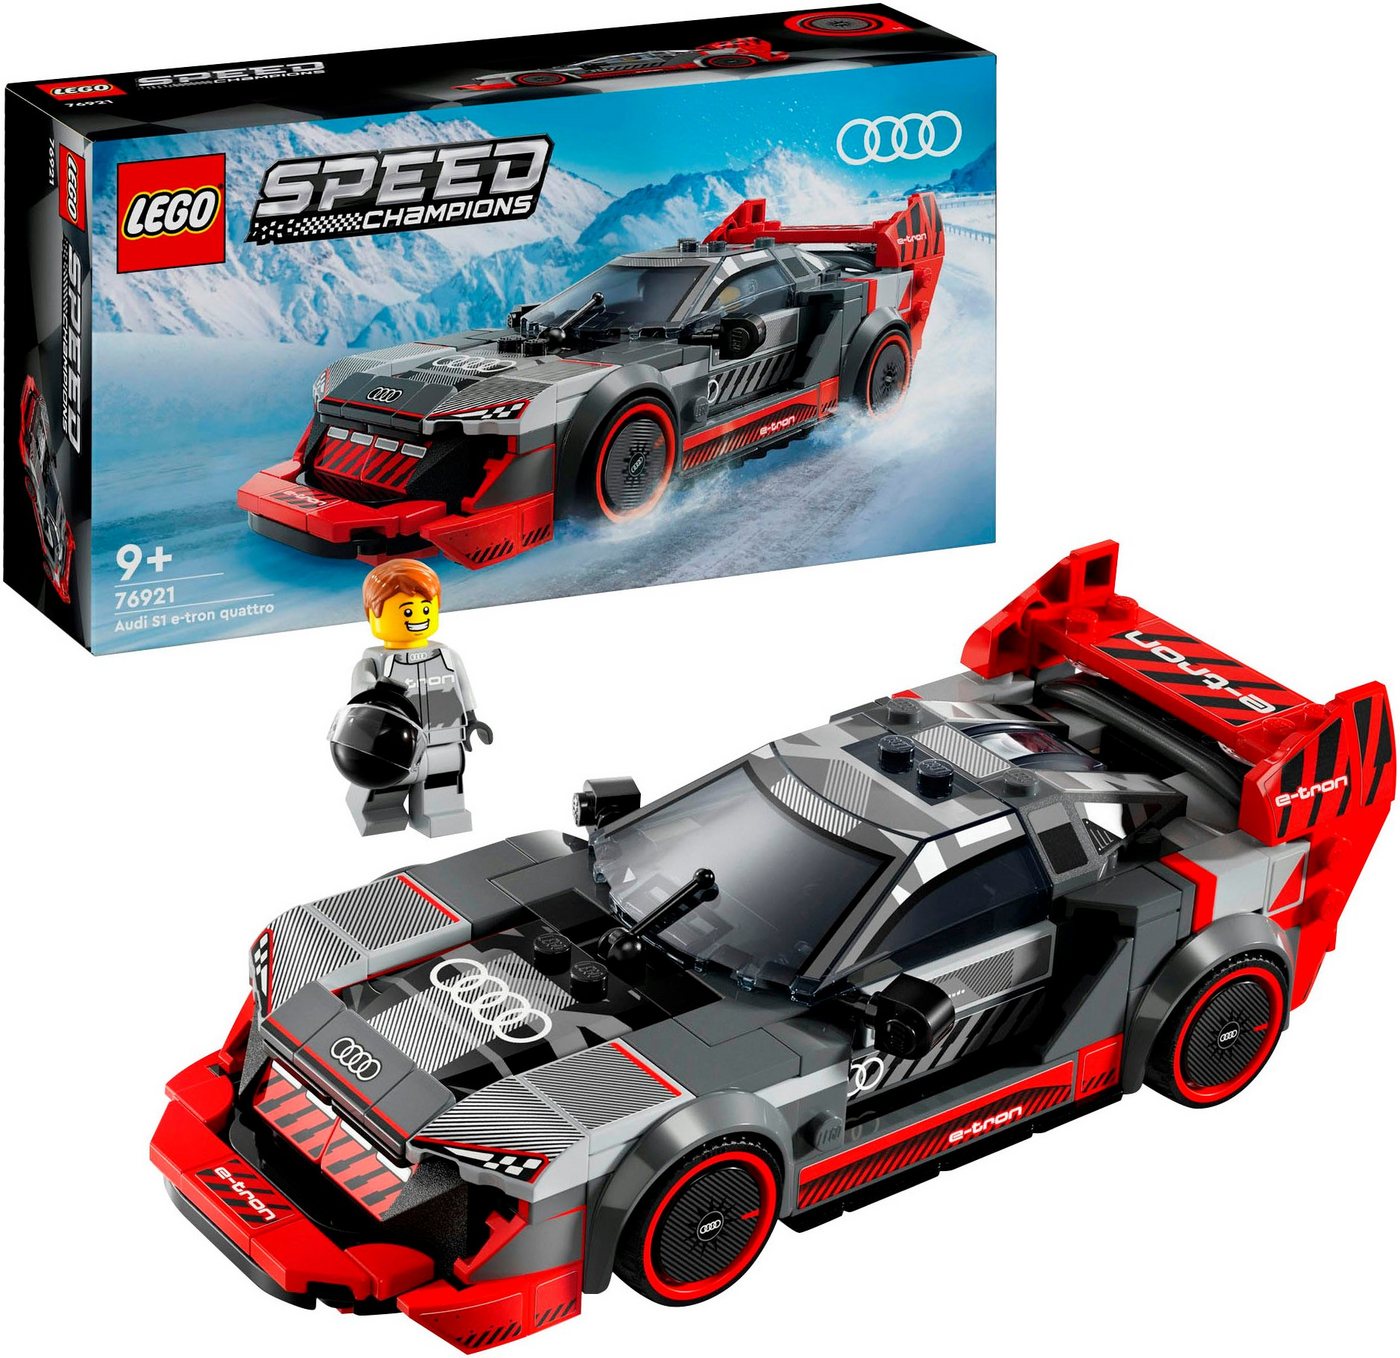 LEGO® Konstruktionsspielsteine Audi S1 e-tron quattro Rennwagen (76921), LEGO® Speed Champions, (274 St), Made in Europe von LEGO®